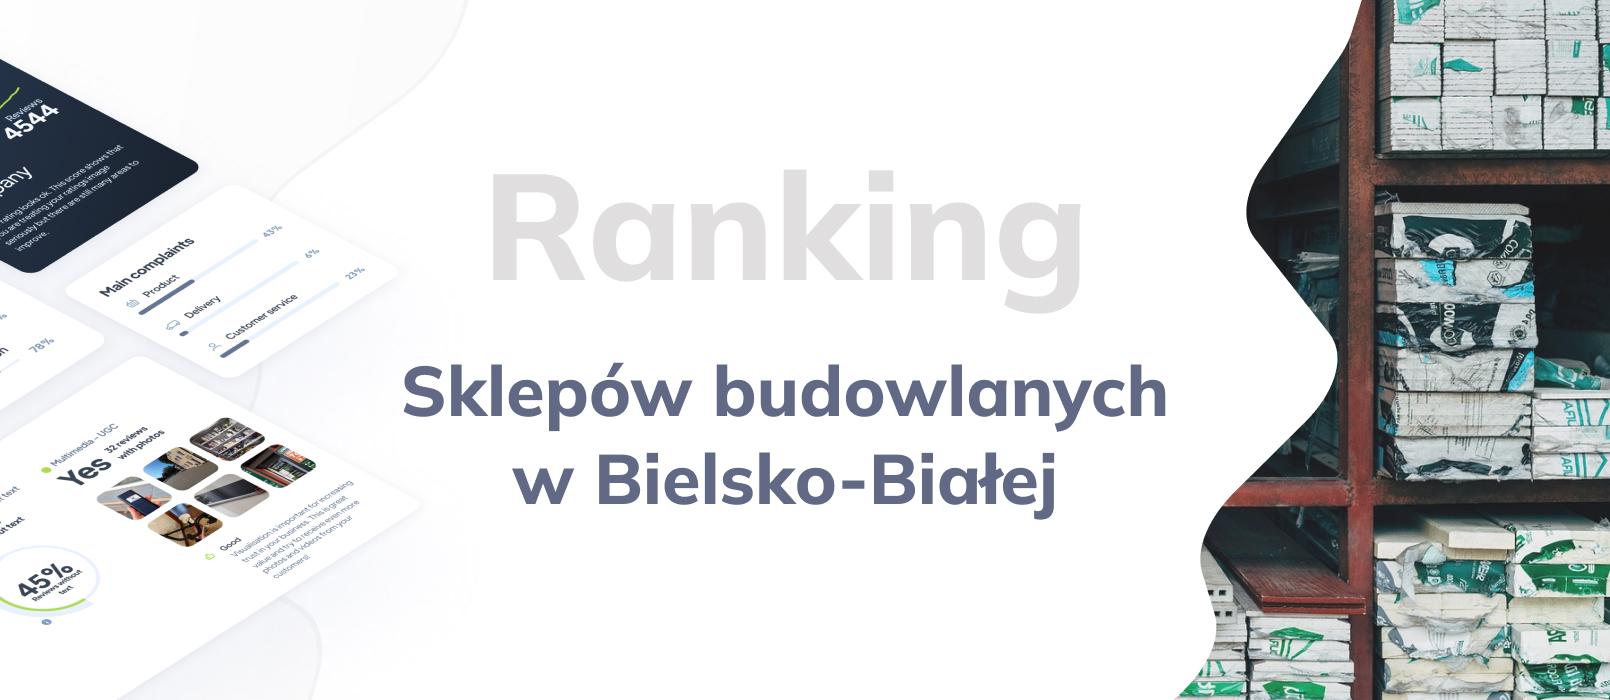 Sklepy budowlane w Bielsko-Białej - ranking TOP 10